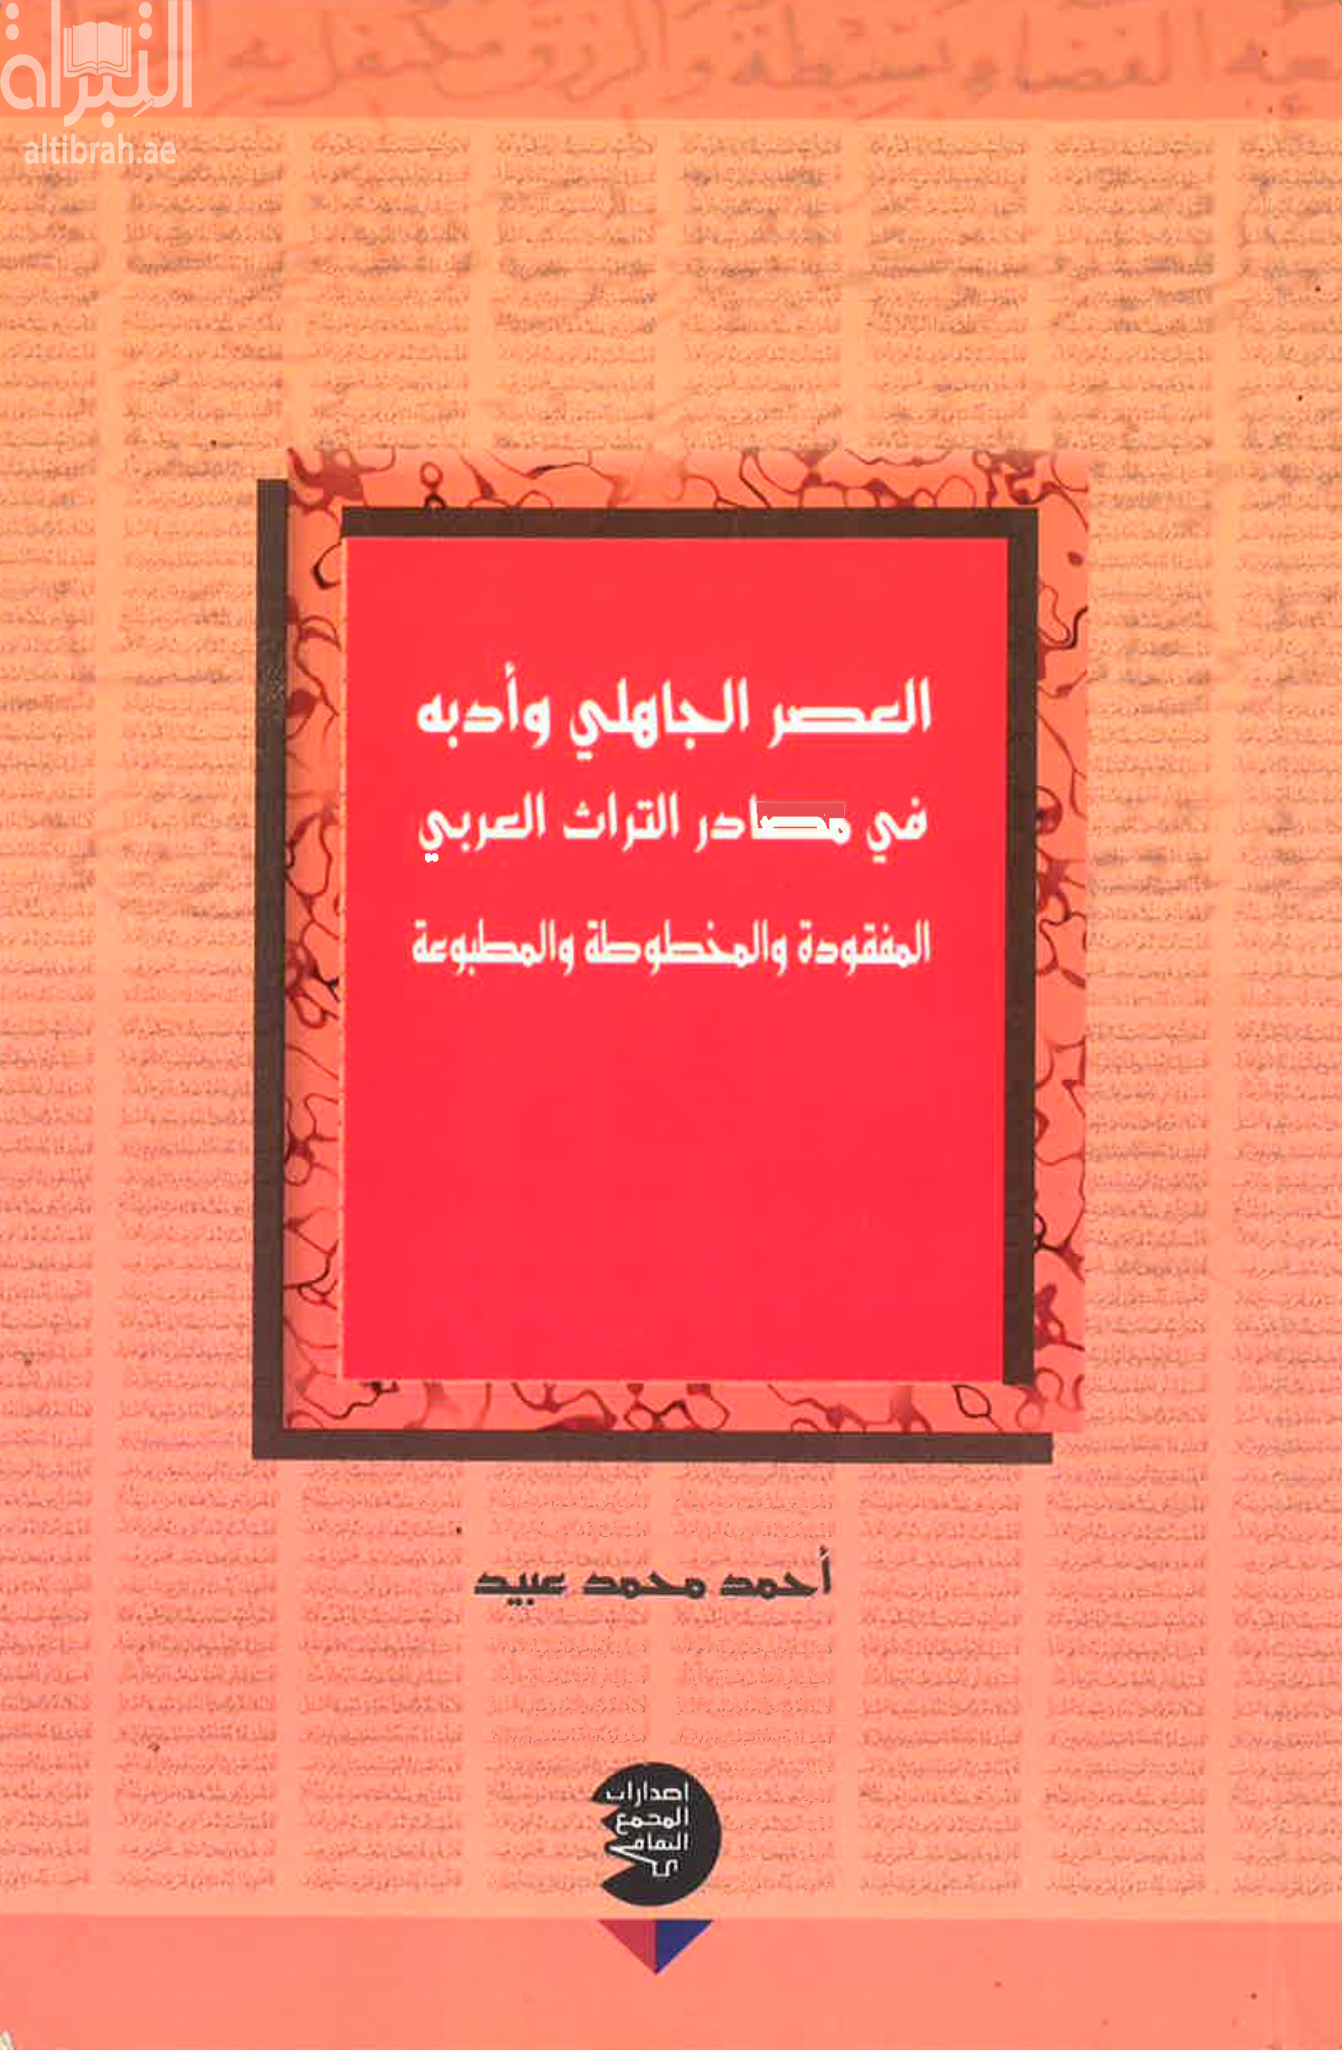 العصر الجاهلي وأدبه في مصادر التراث العربي المفقودة والمخطوطة والمطبوعة